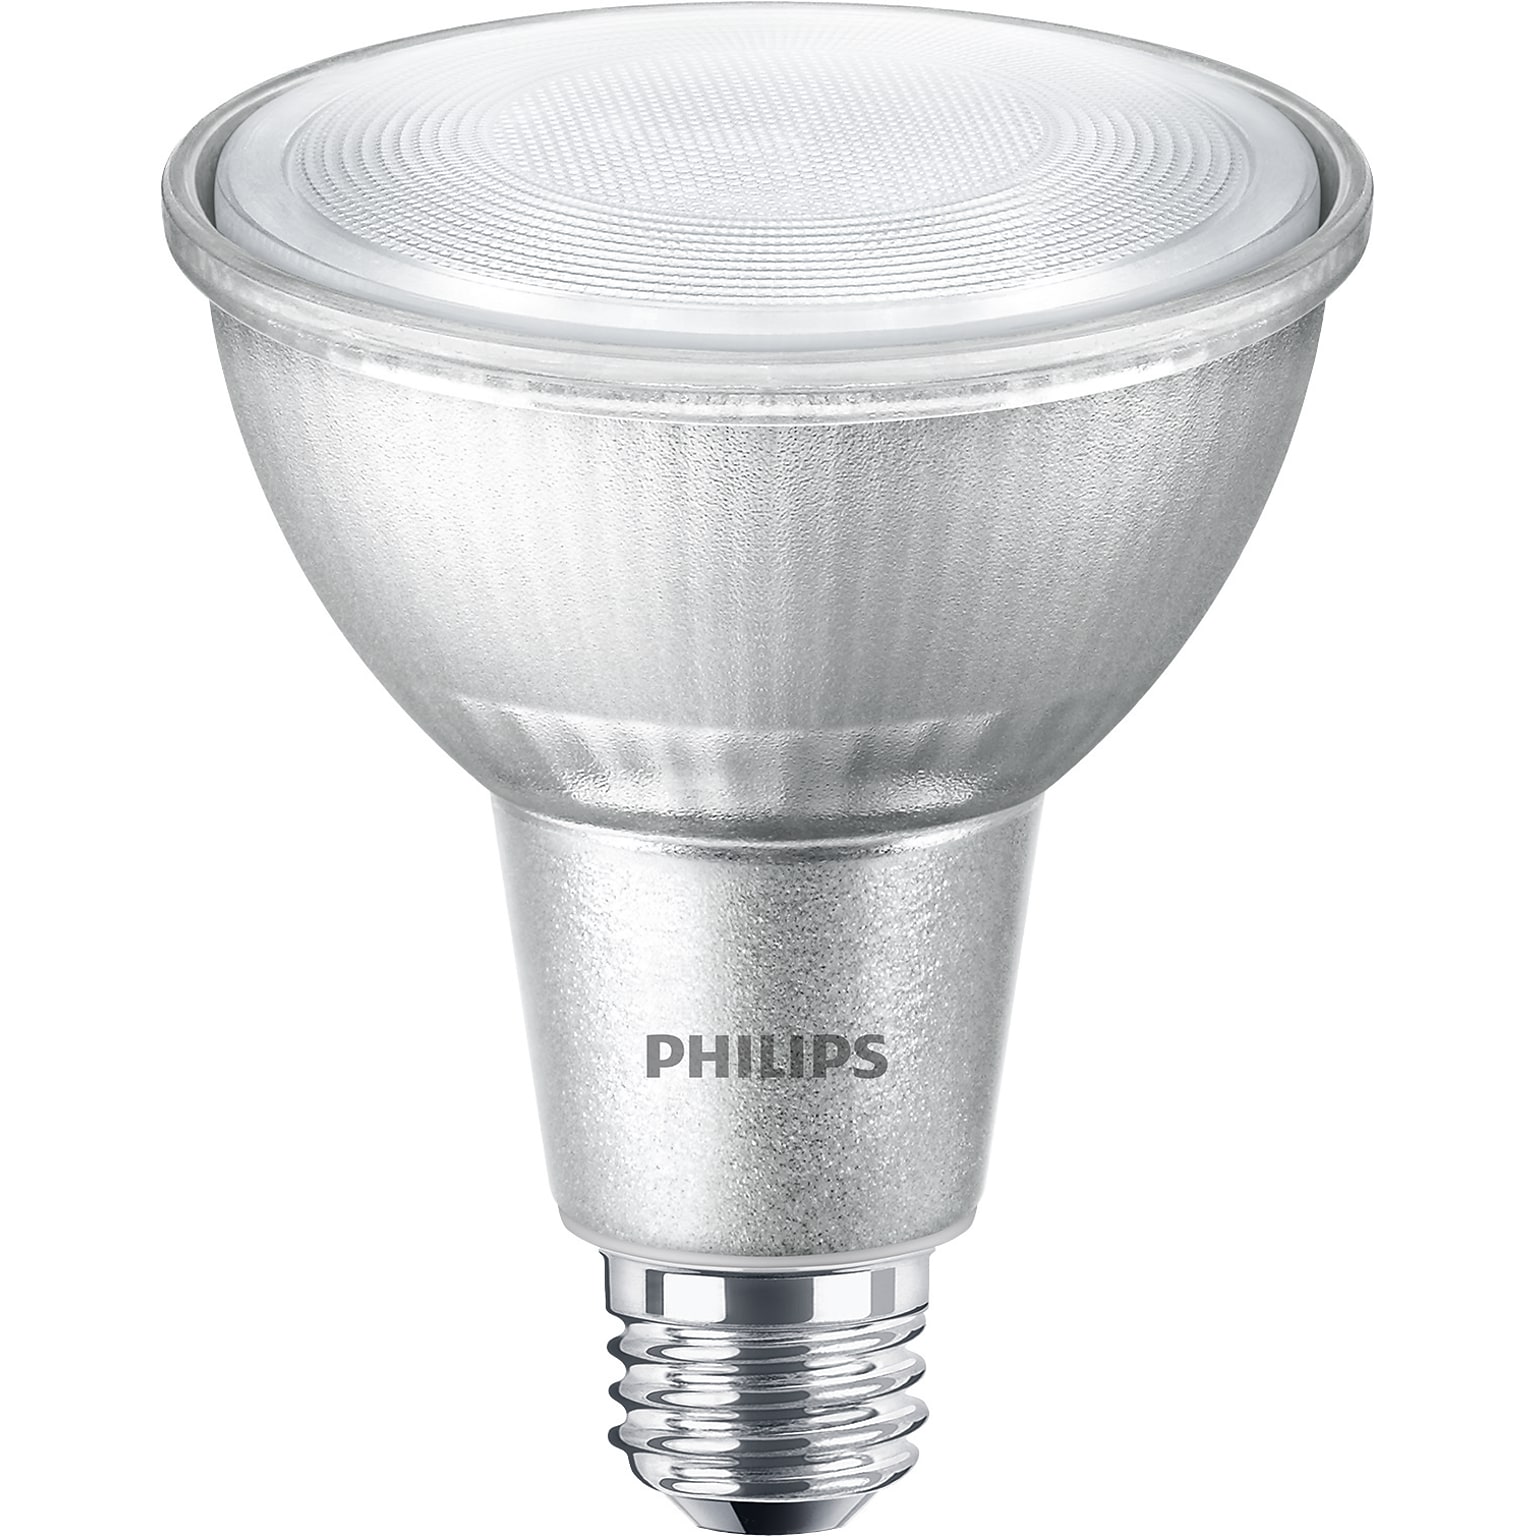 Philips LED PAR30L 10 Watt Bulb, Pack of 6 (529735)